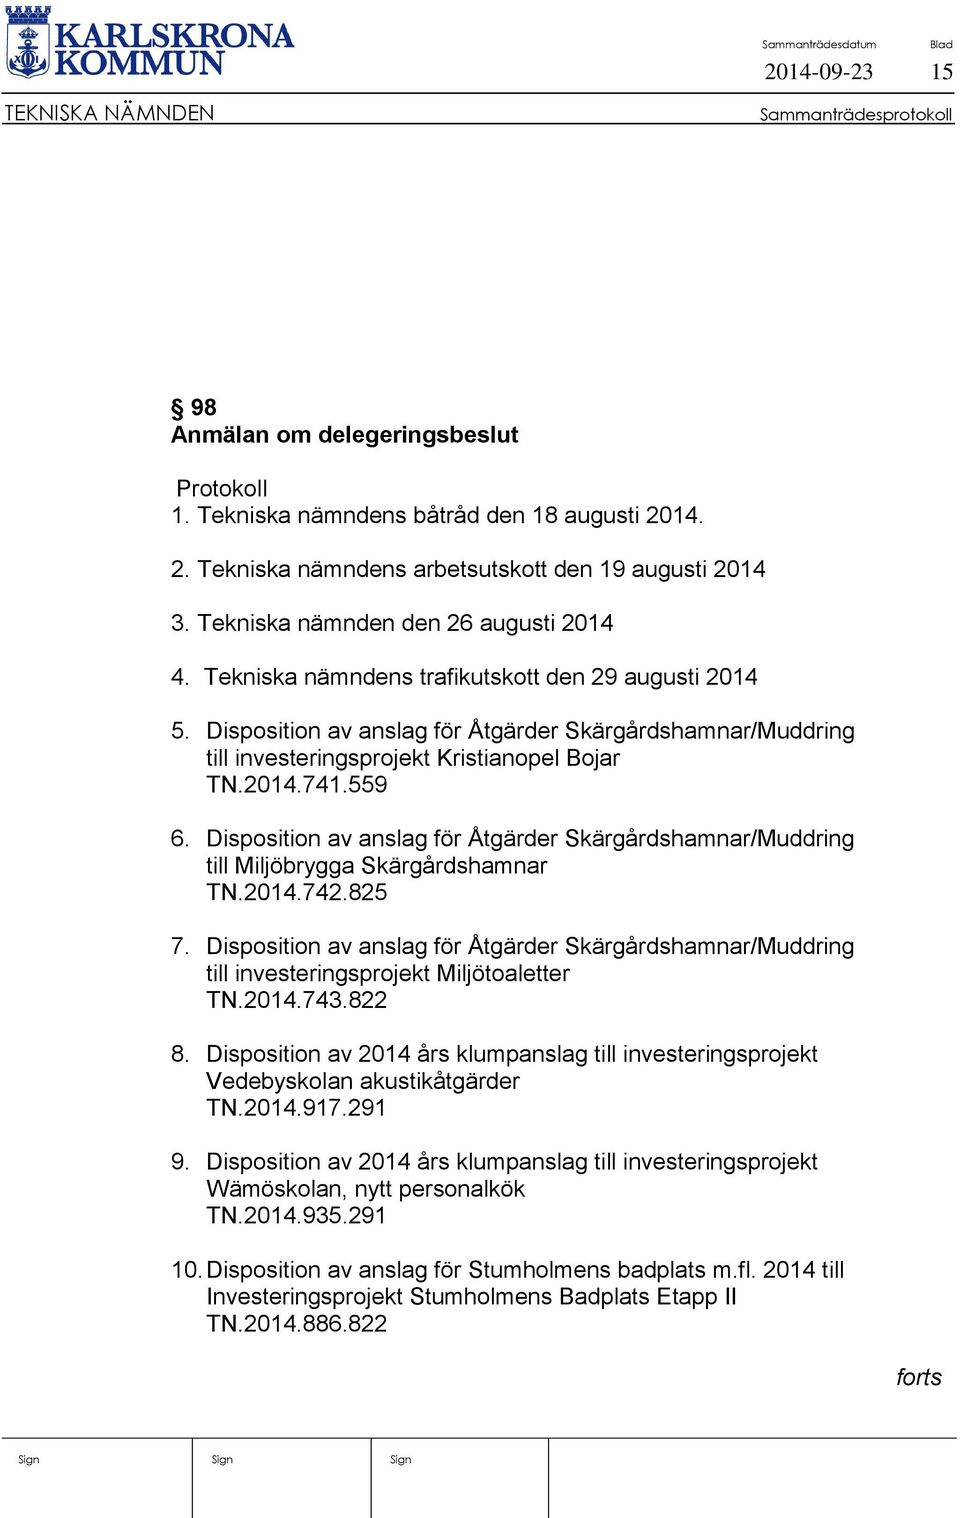 Disposition av anslag för Åtgärder Skärgårdshamnar/Muddring till investeringsprojekt Kristianopel Bojar TN.2014.741.559 6.